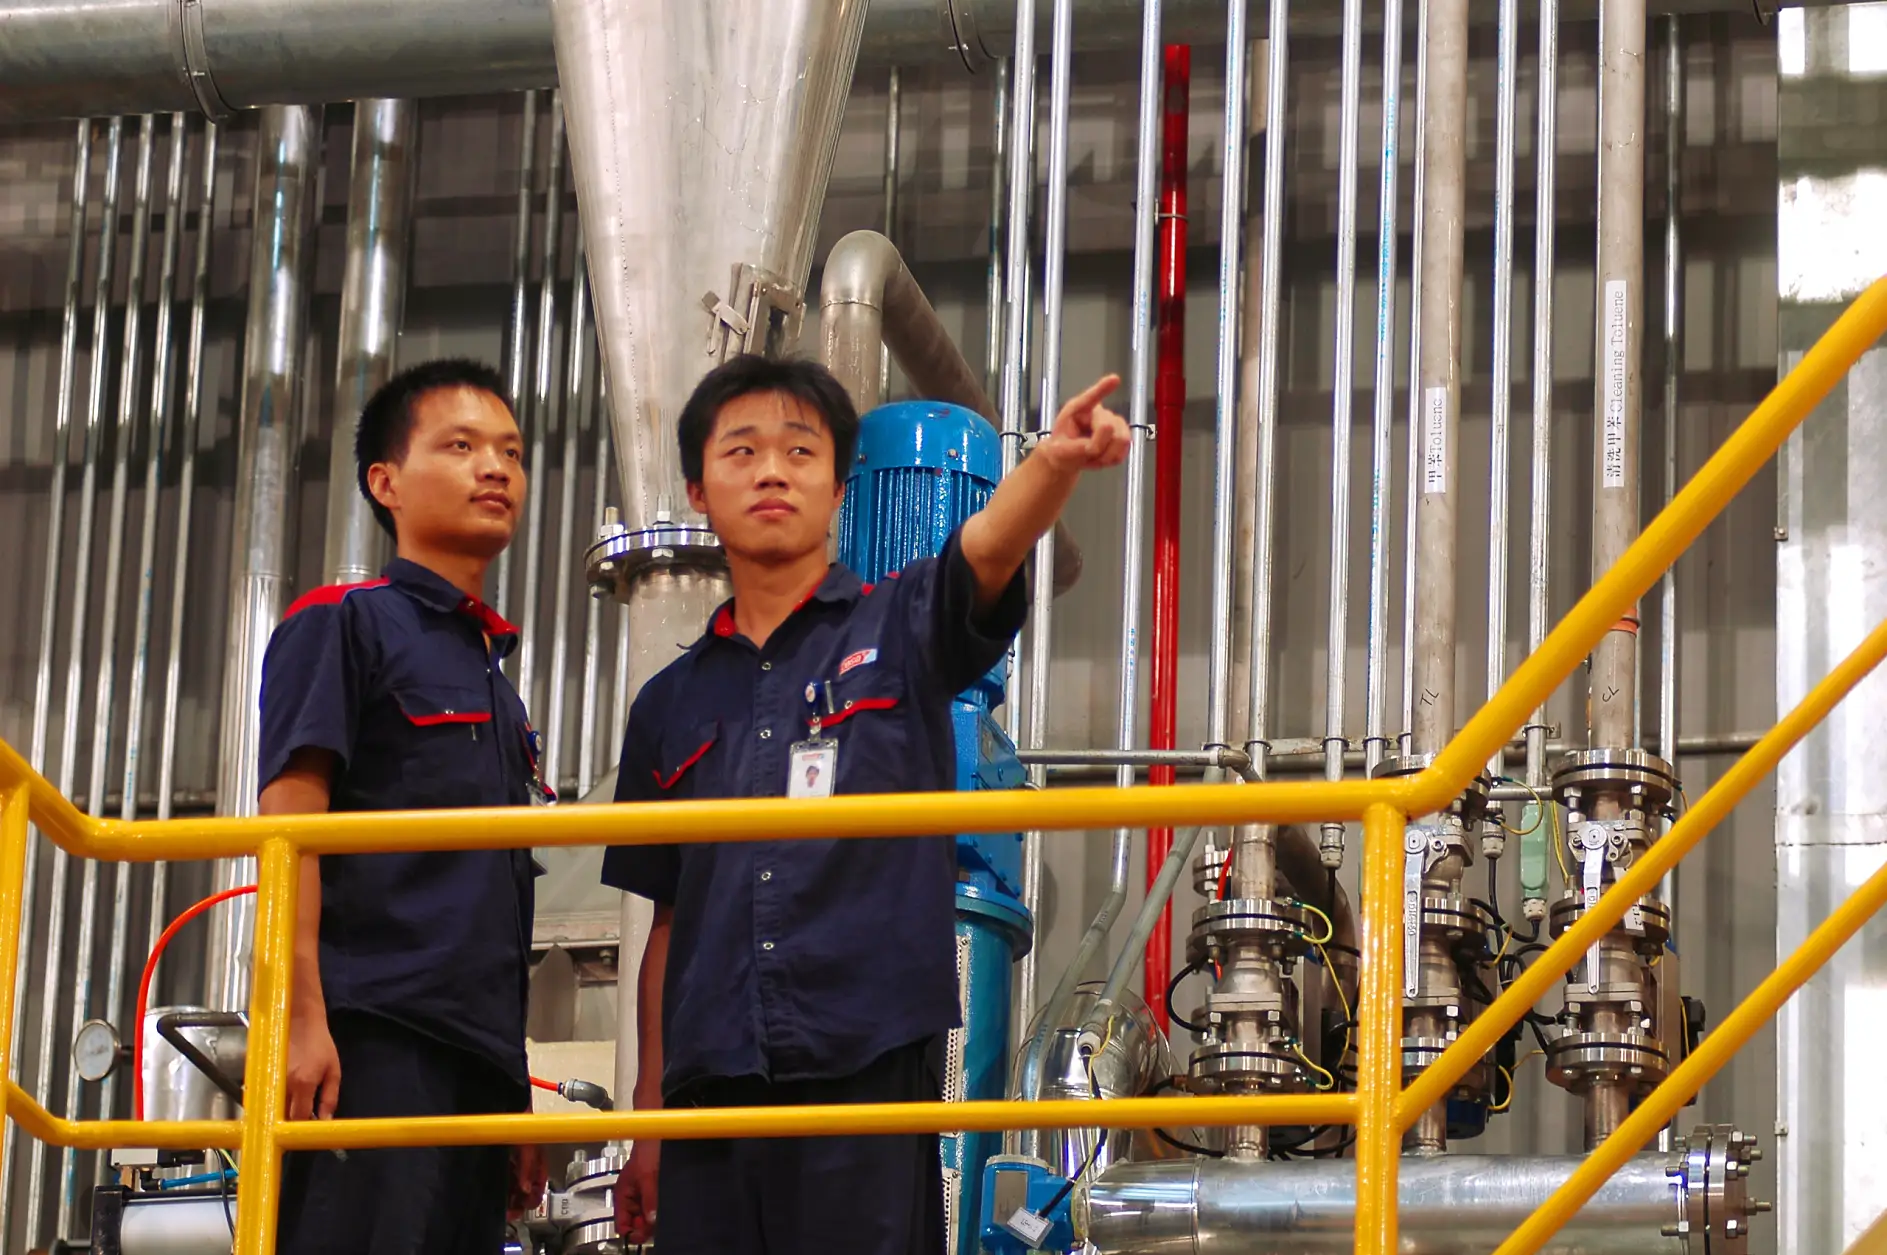 Arbeiter im tesa Standort Suzhou, China